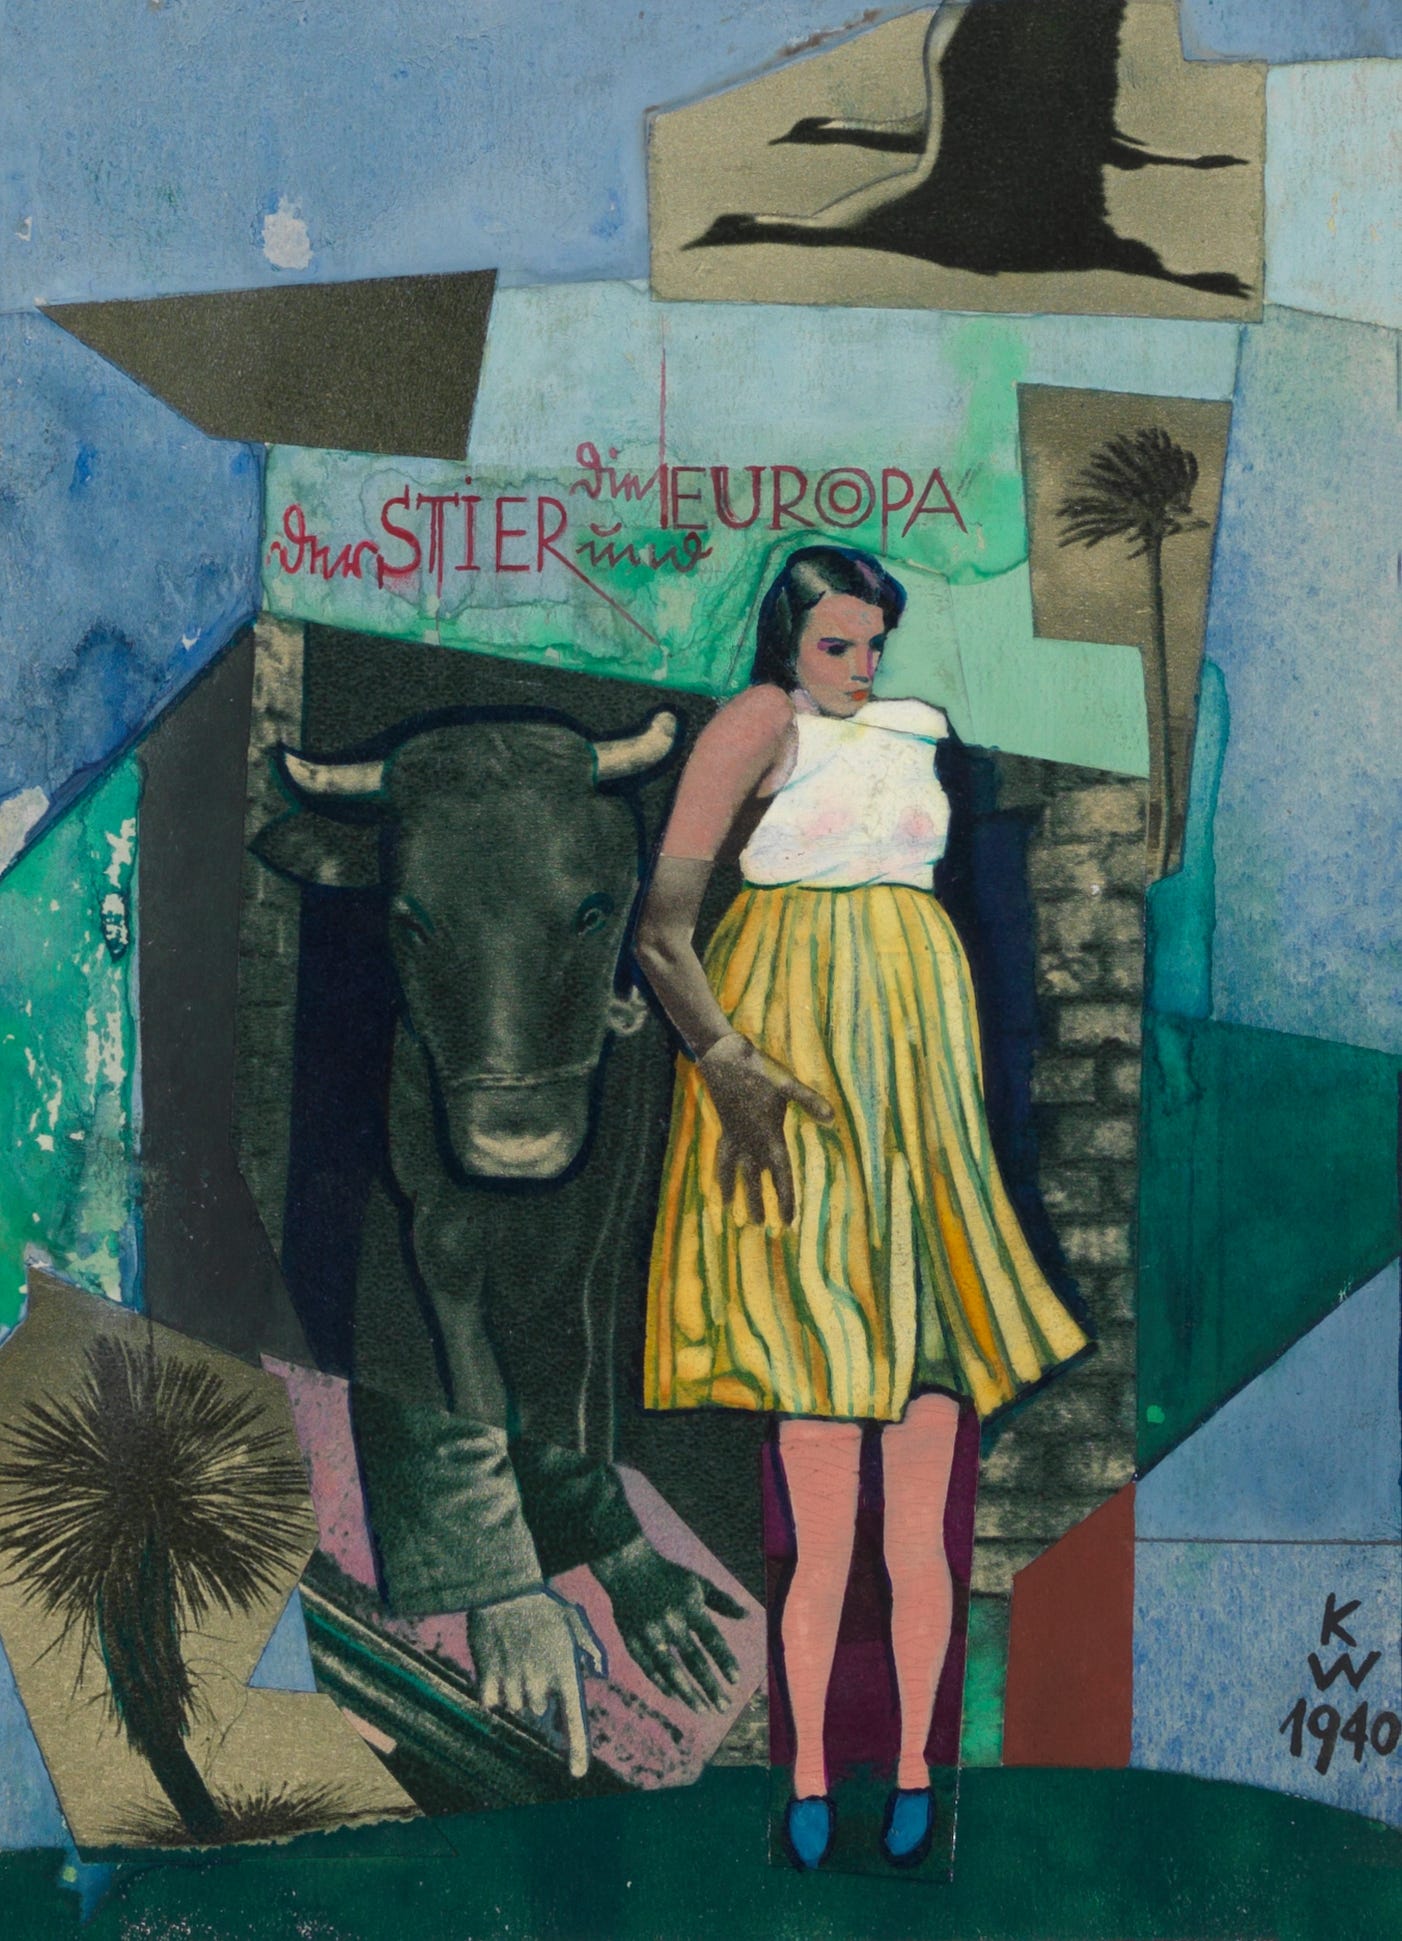 Der Stier und die Europa (1940)by Karl Wiener